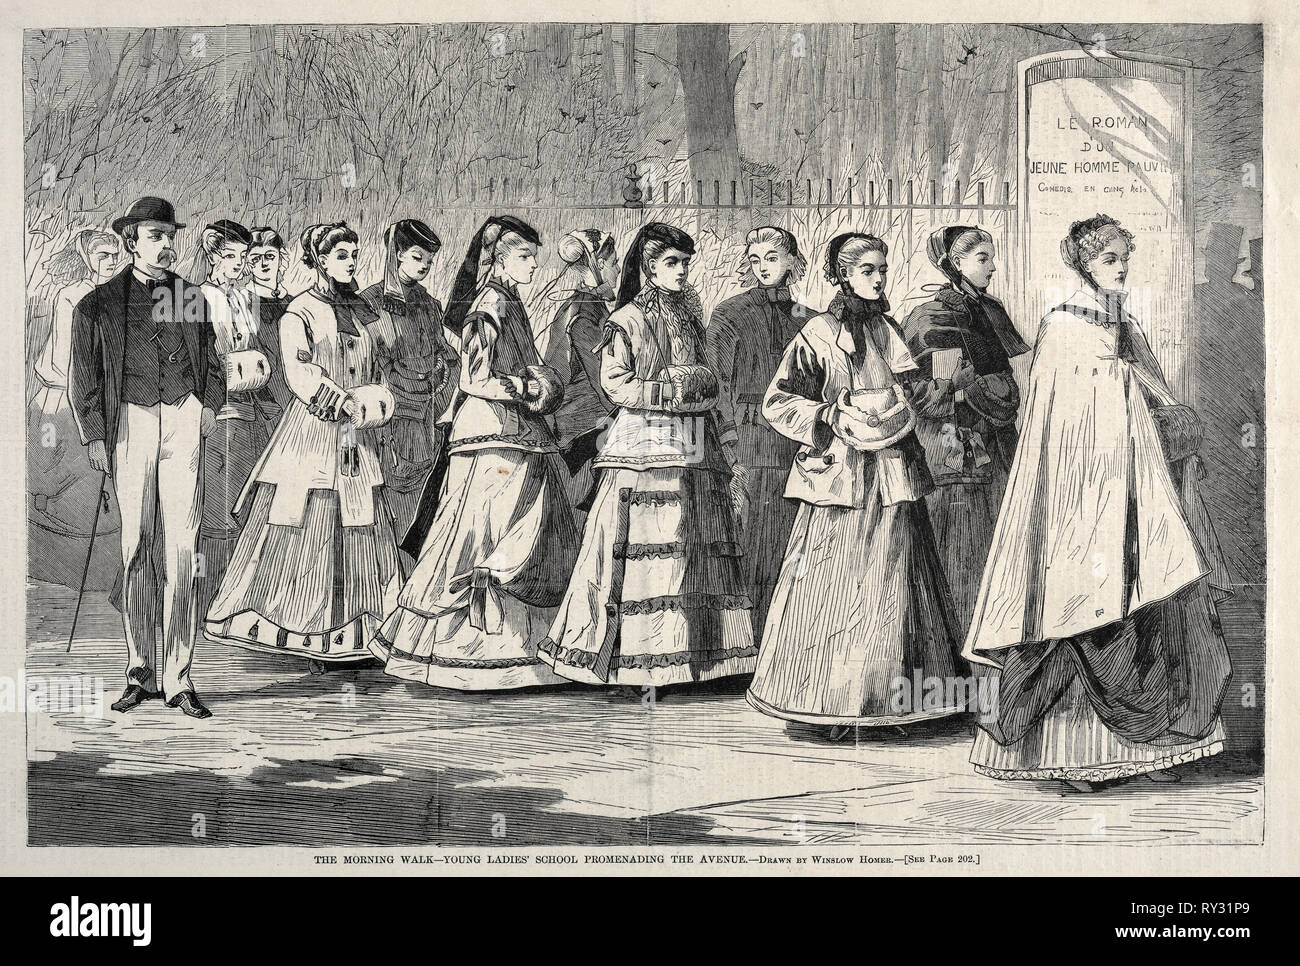 La mattina a piedi - Giovani donne' School Promenading Avenue, 1868. Winslow Homer (American, 1836-1910). Incisione su legno Foto Stock